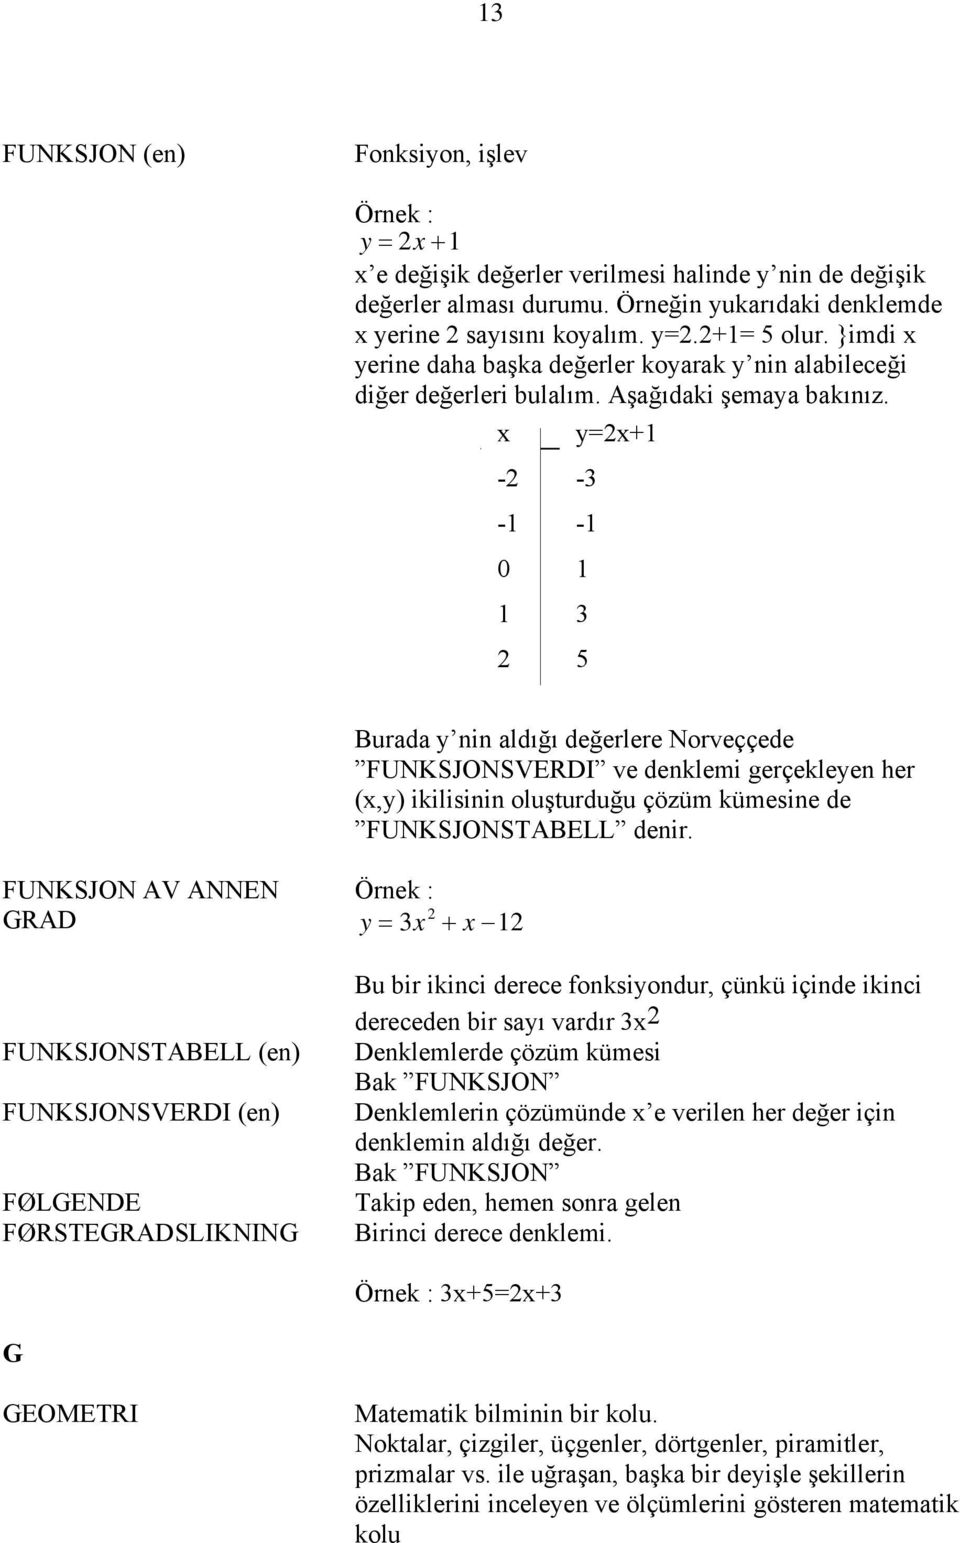 x y=2x+1-2 -3-1 -1 0 1 2 1 3 5 Burada y nin aldığı değerlere Norveççede FUNKSJONSVERDI ve denklemi gerçekleyen her (x,y) ikilisinin oluşturduğu çözüm kümesine de FUNKSJONSTABELL denir.